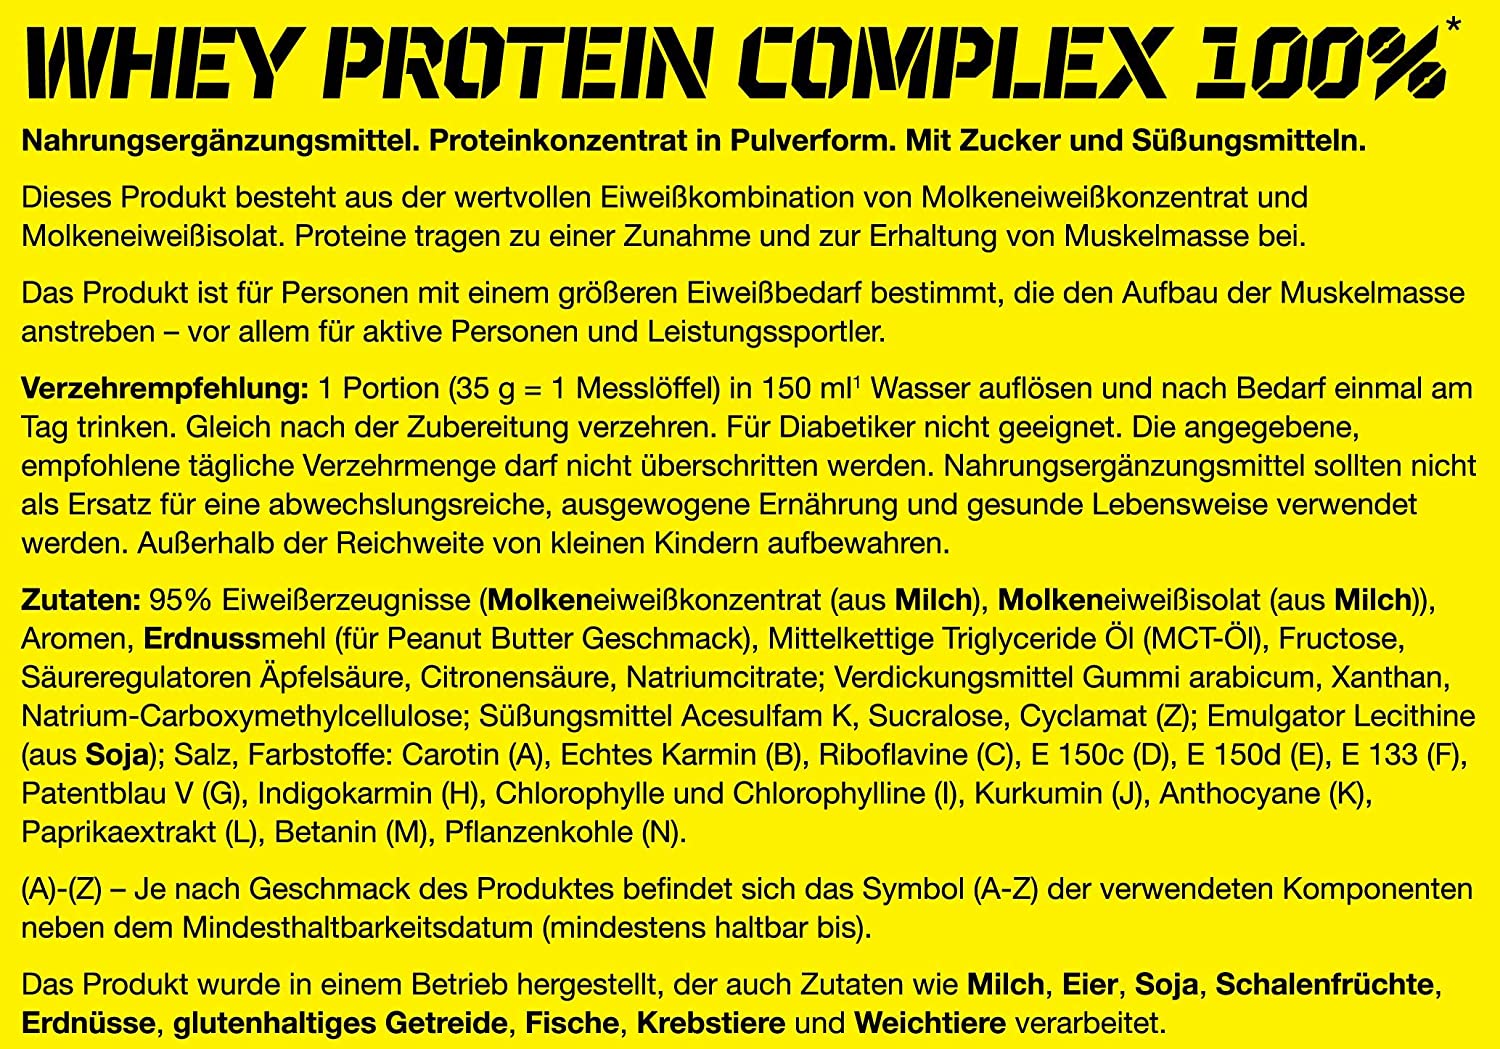 Olimp Whey Protein Complex 100% Inhalt